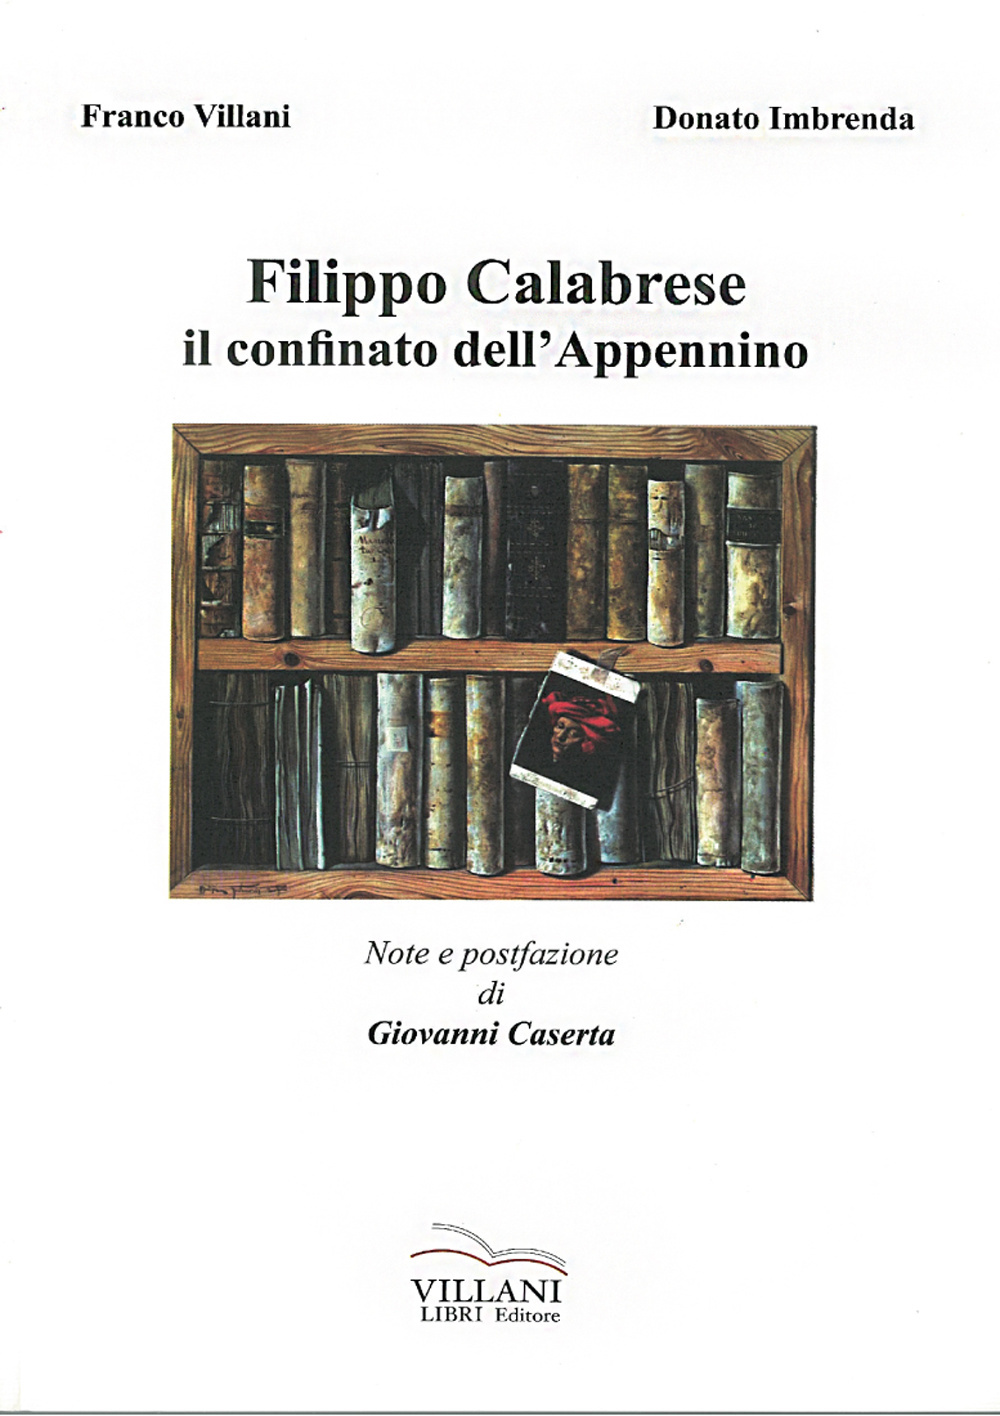 Filippo Calabrese, il confinato dell'Appennino